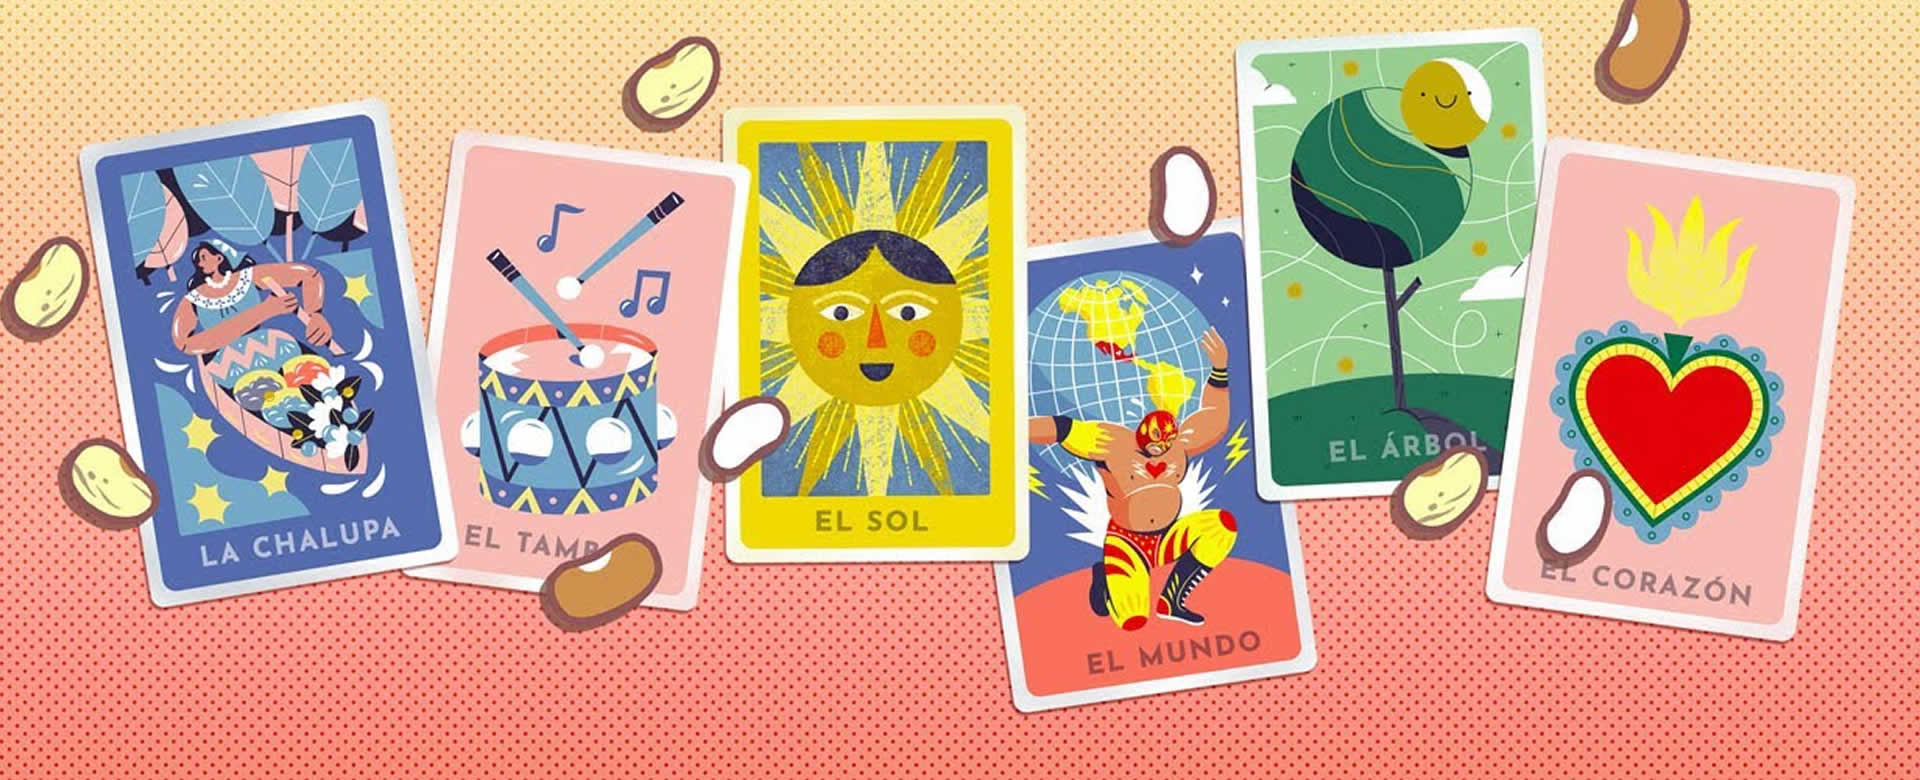 Google rinde homenaje a la lotería mexicana con un doodle interactivo